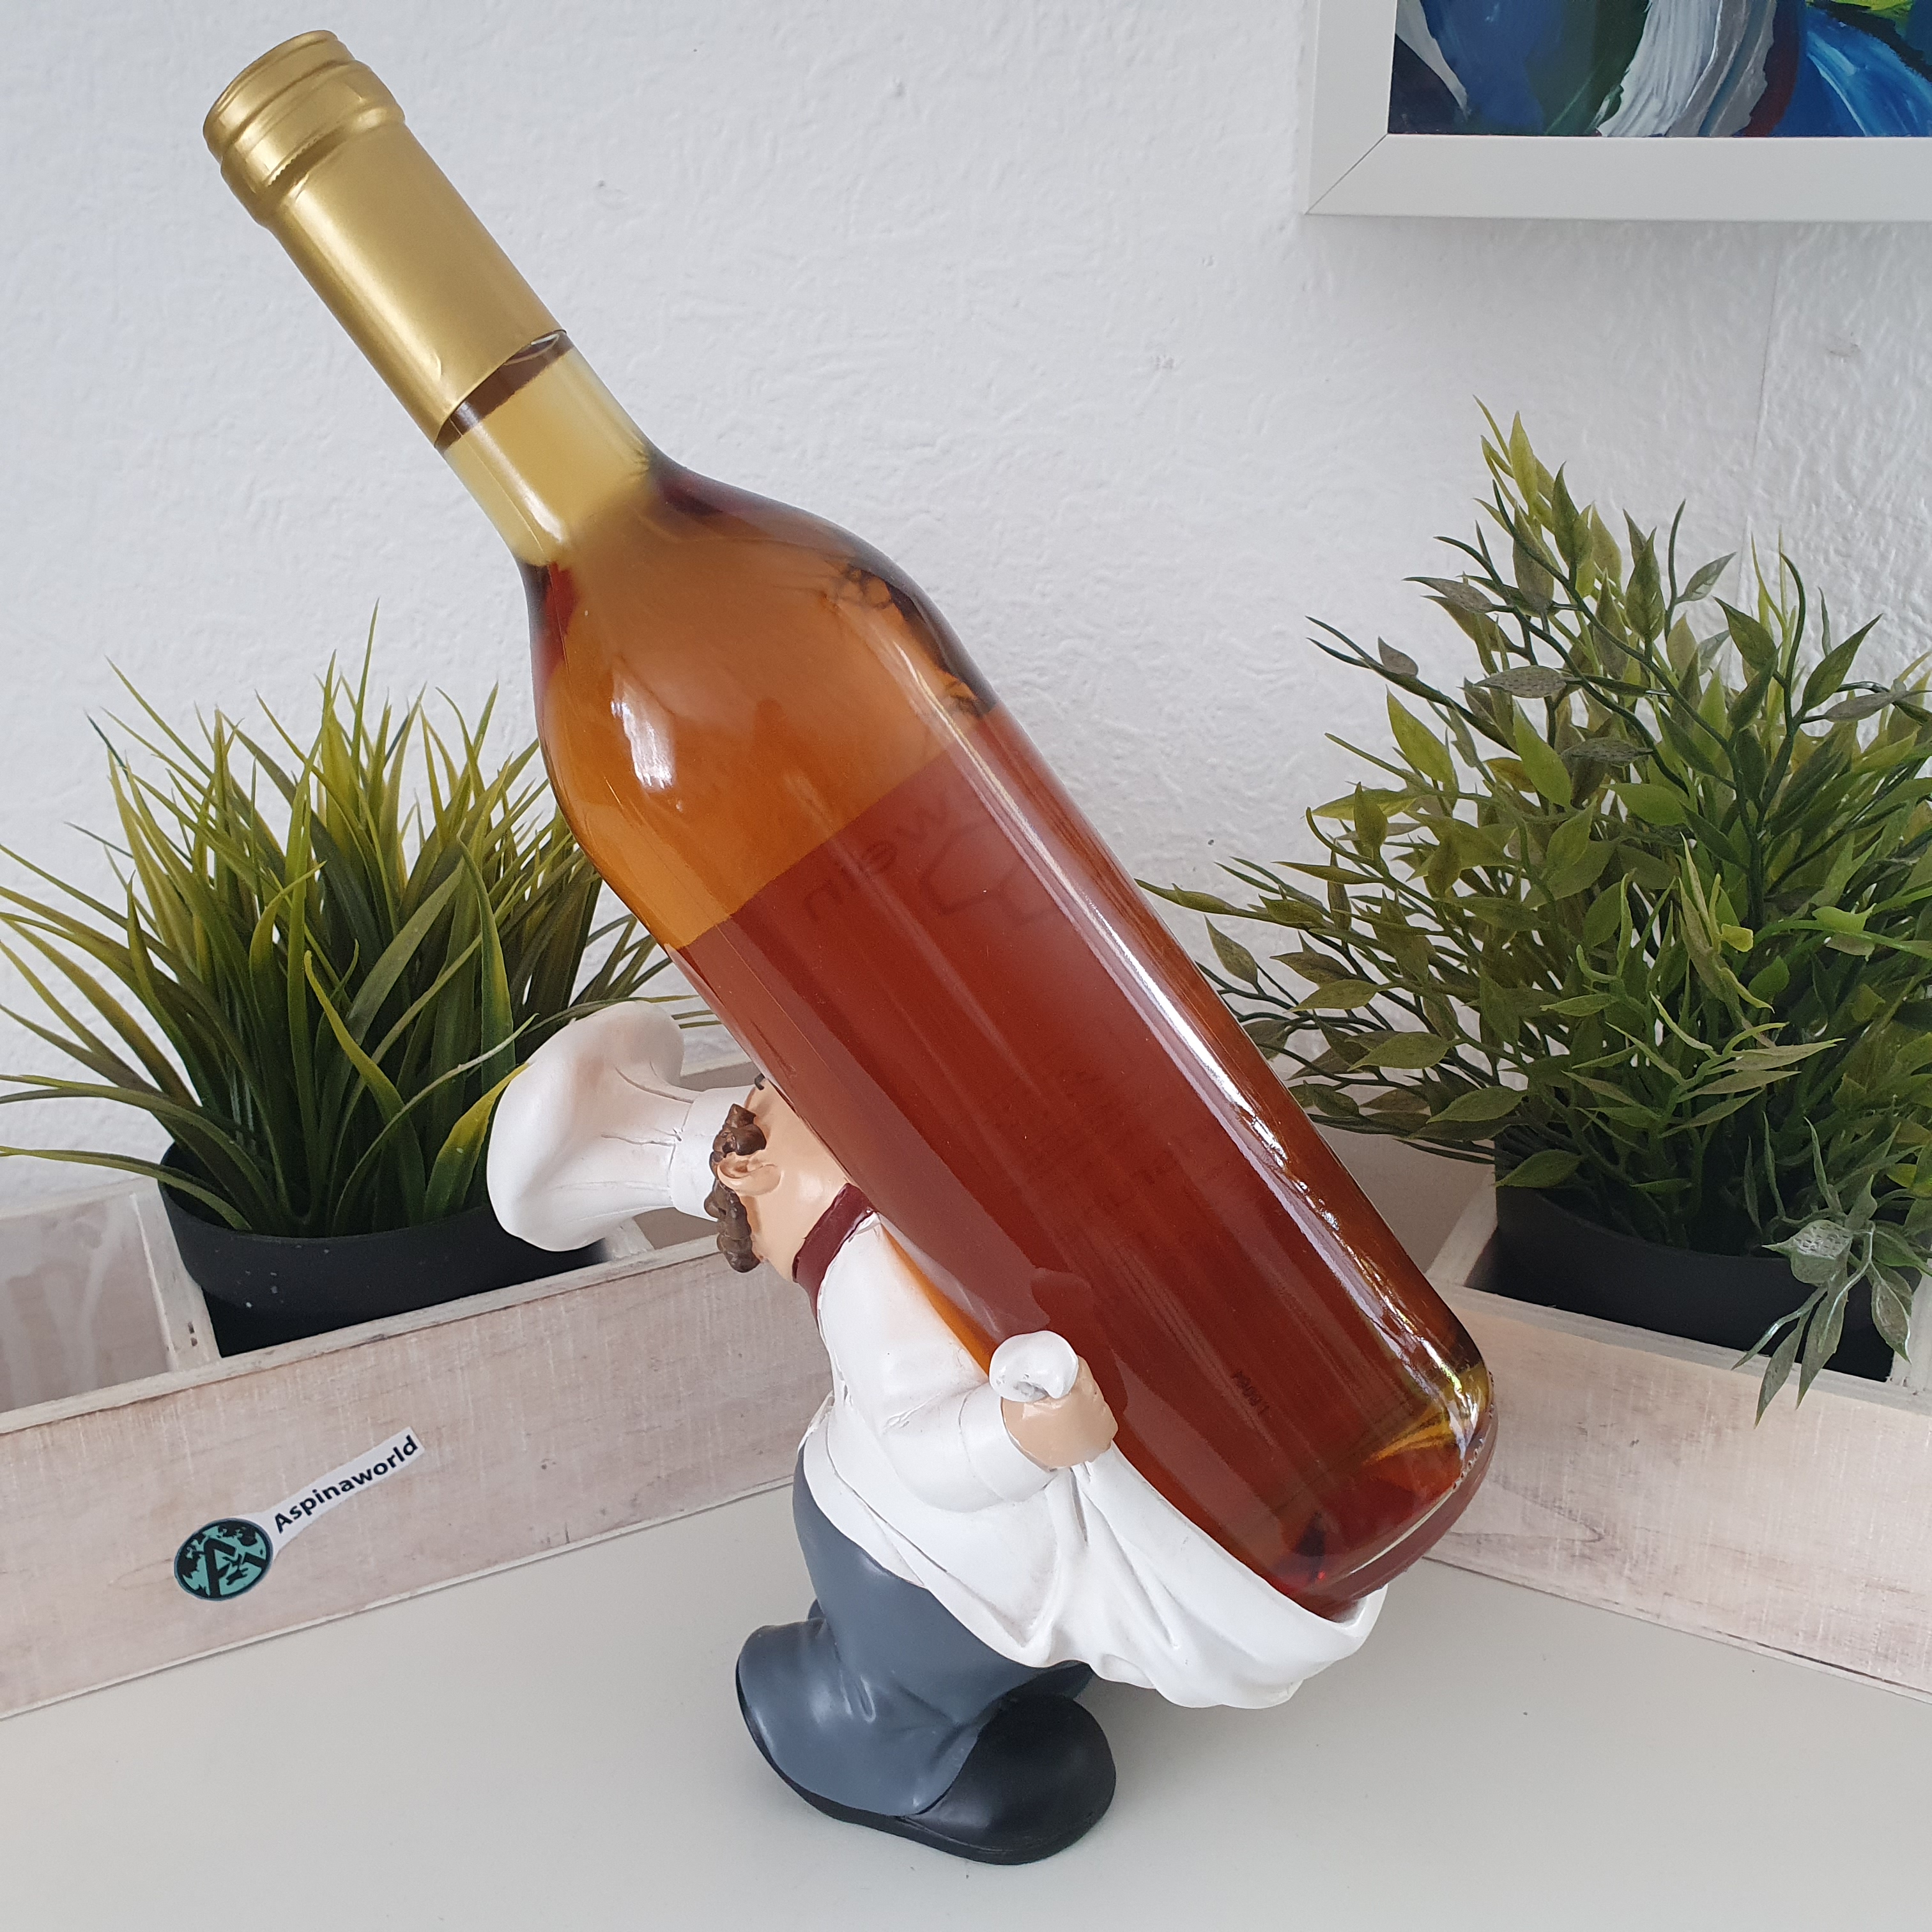 Deko Weinflaschenhalter als Koch 18 cm